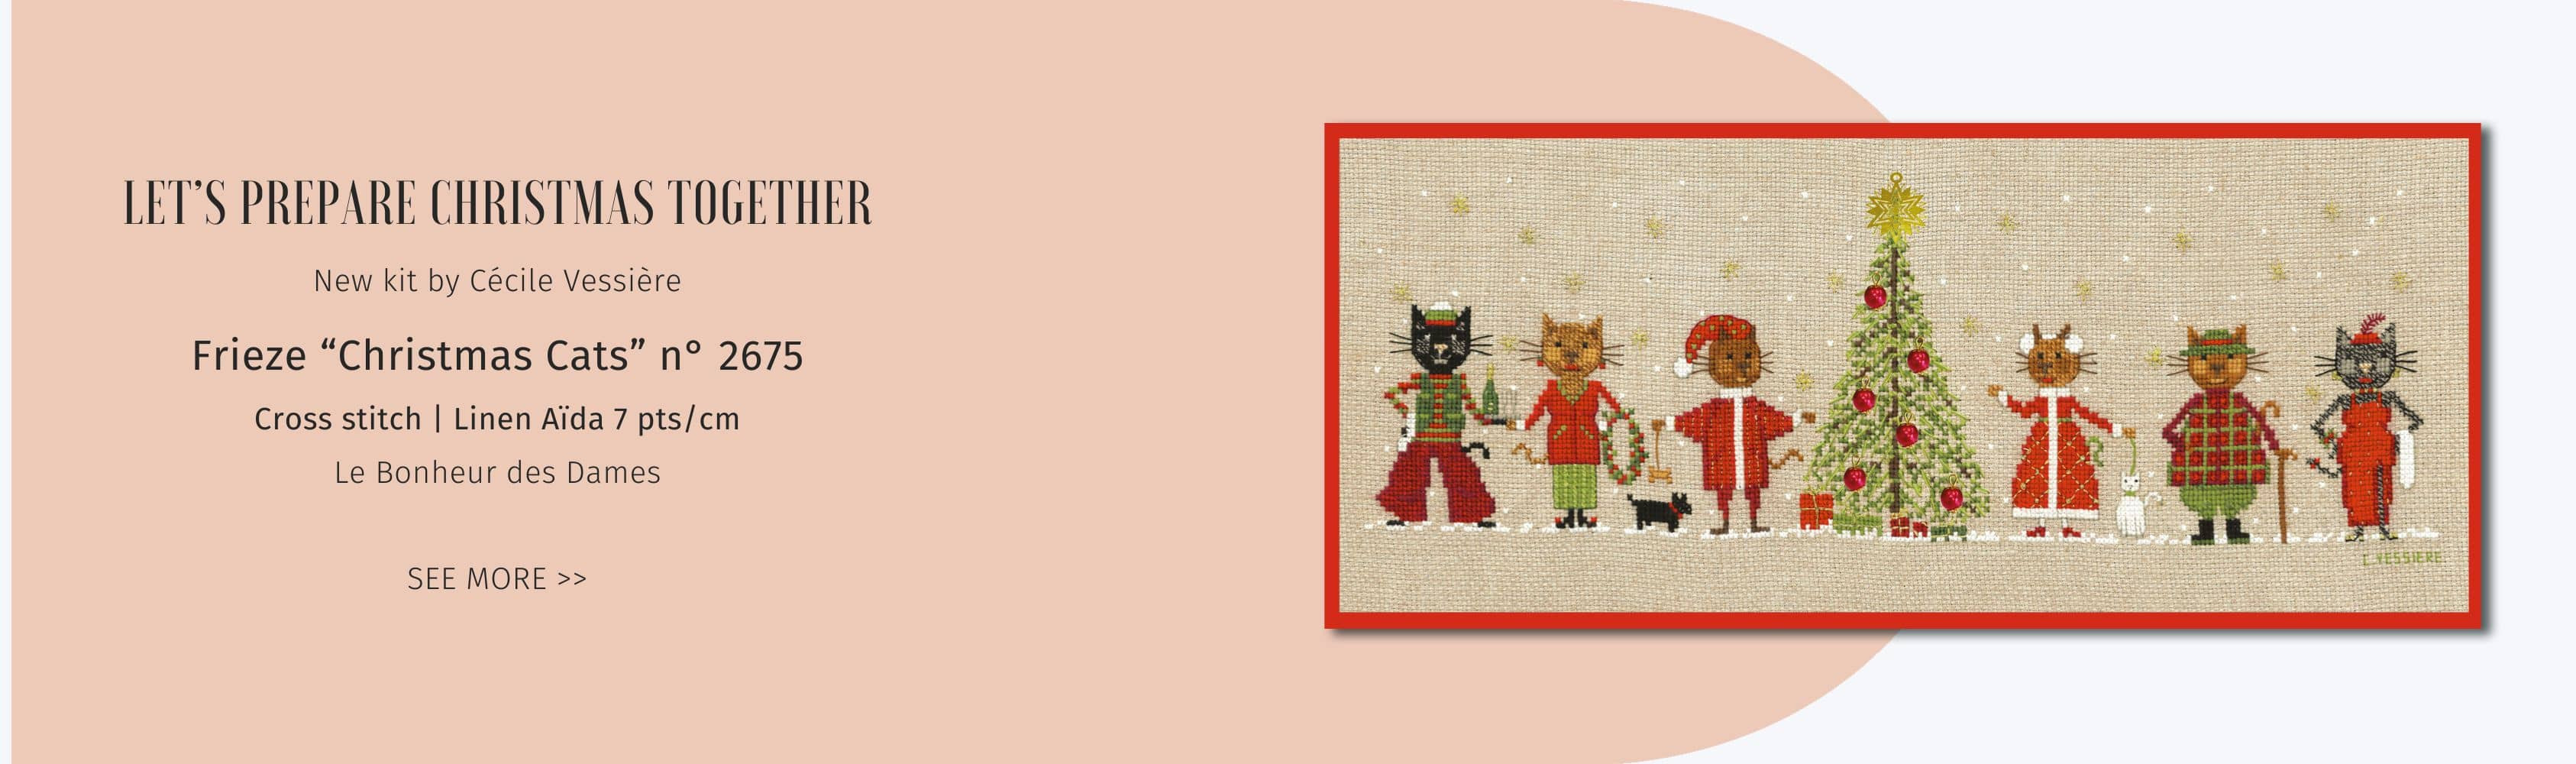 Christmas Cats Frieze. New counted cross stitch on 7 pts/cm linen Aida. Le Bonheur des Dames n° 2675